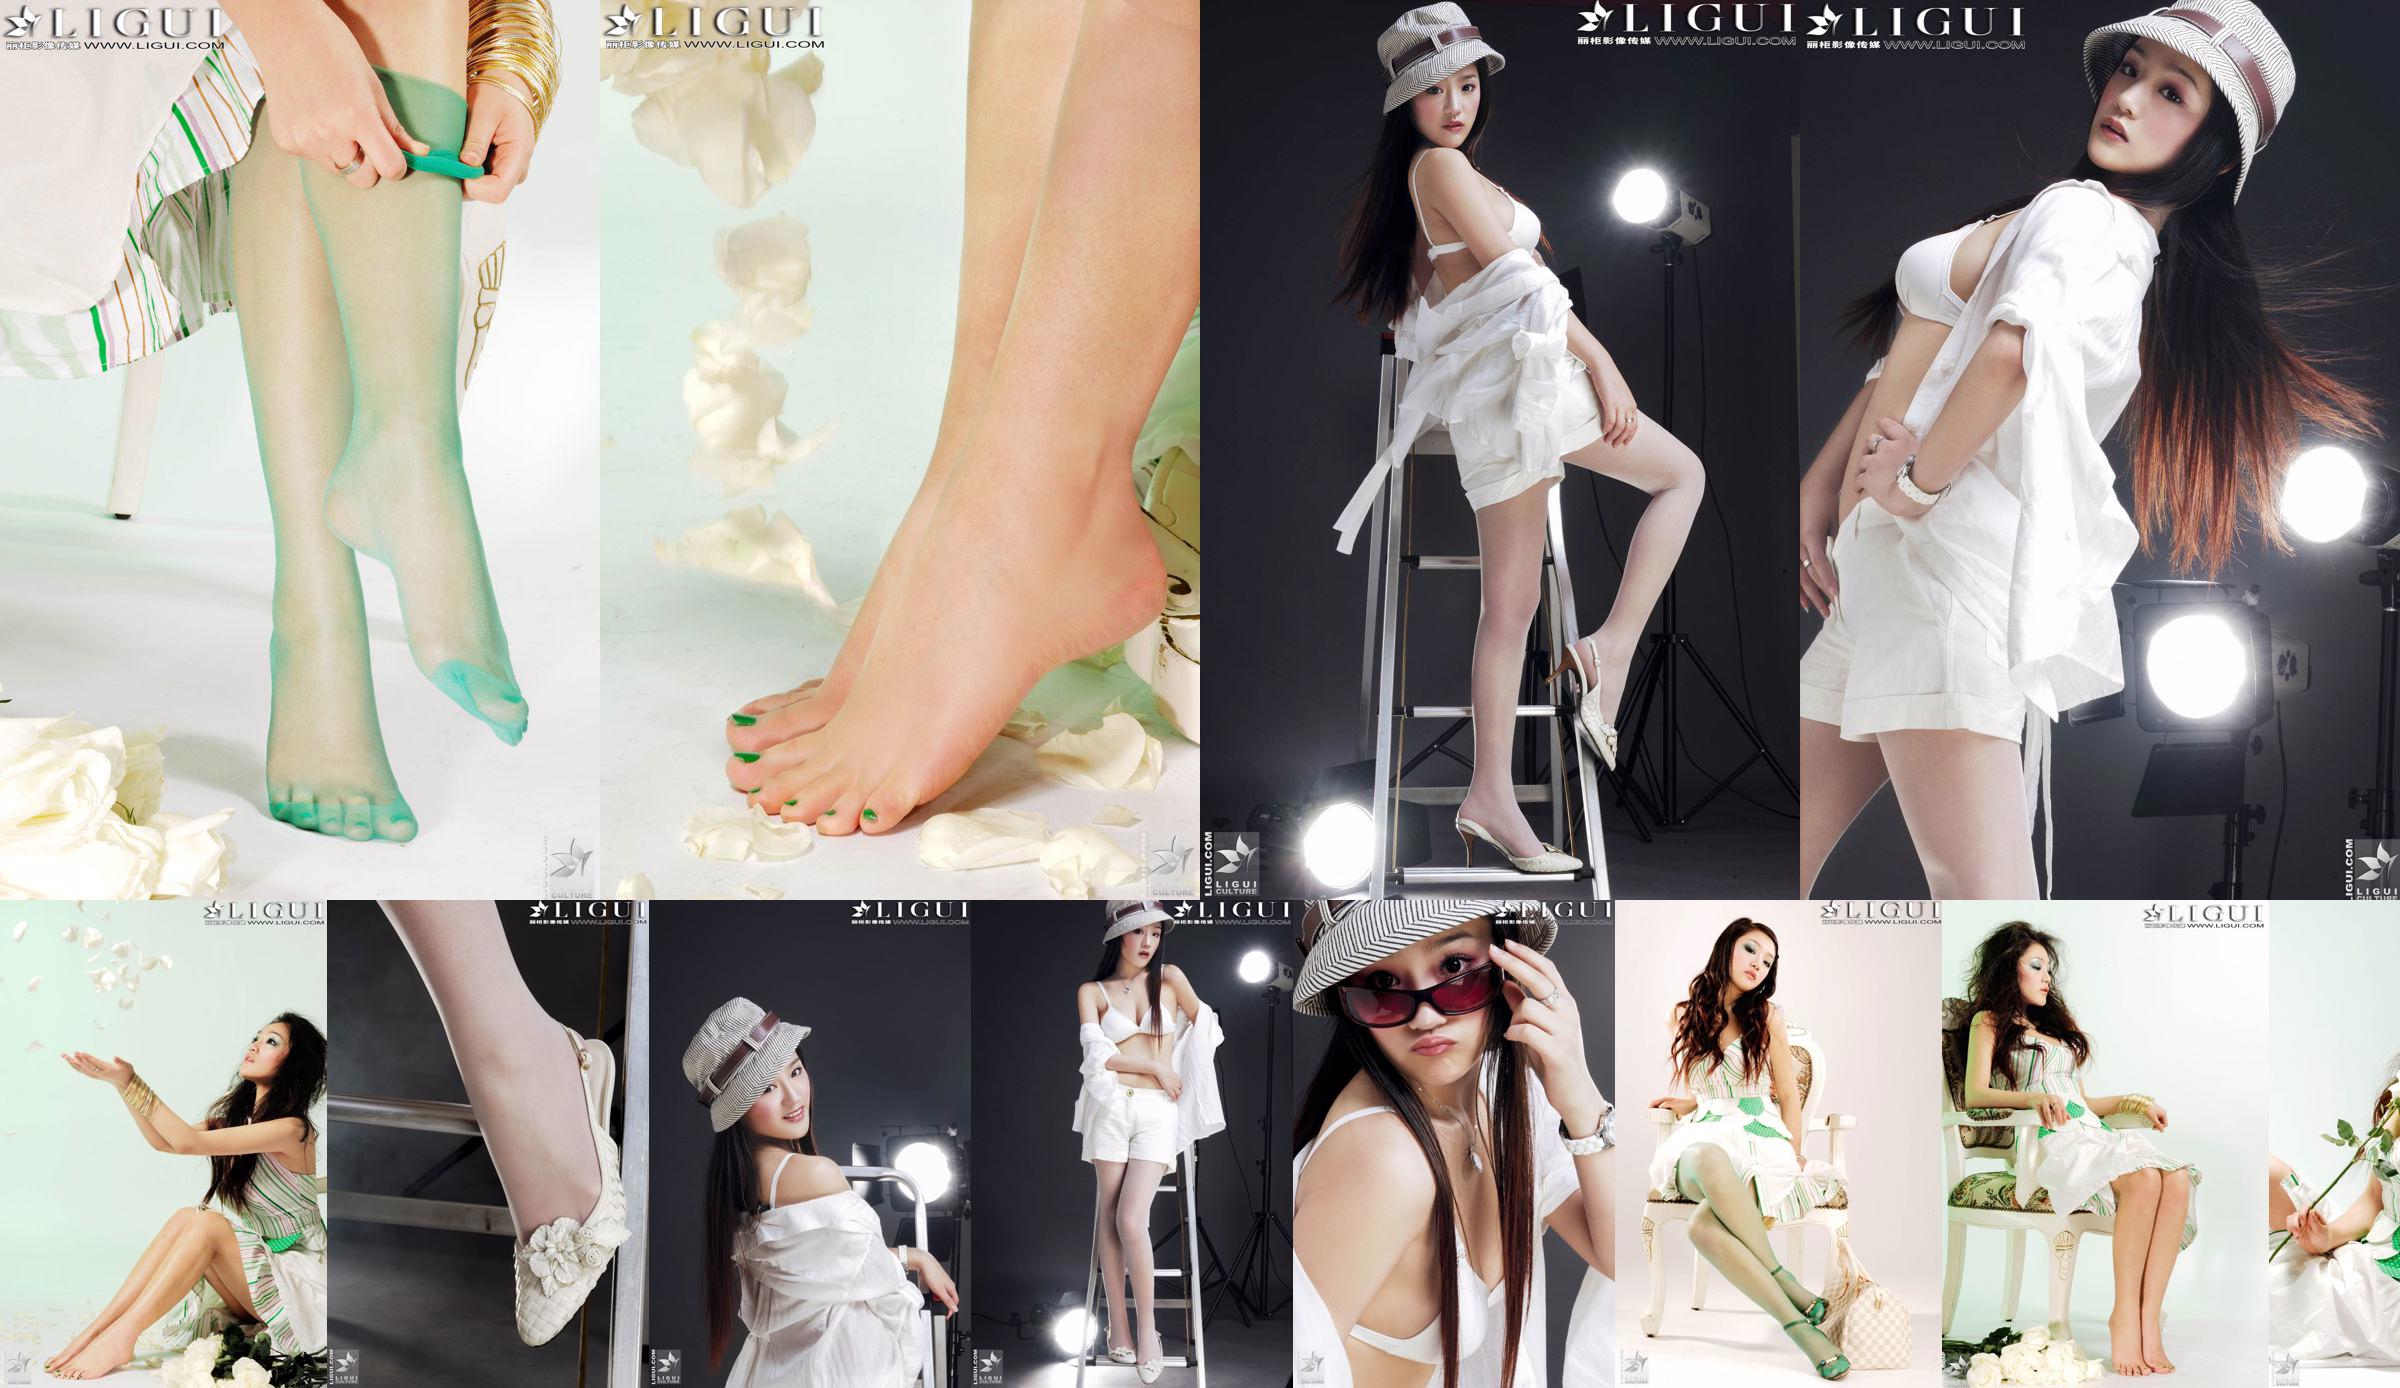 [丽 柜 贵 piede LiGui] Foto "Fashionable Foot" del modello Zhang Jingyan di belle gambe e piedi di seta No.5918c1 Pagina 1